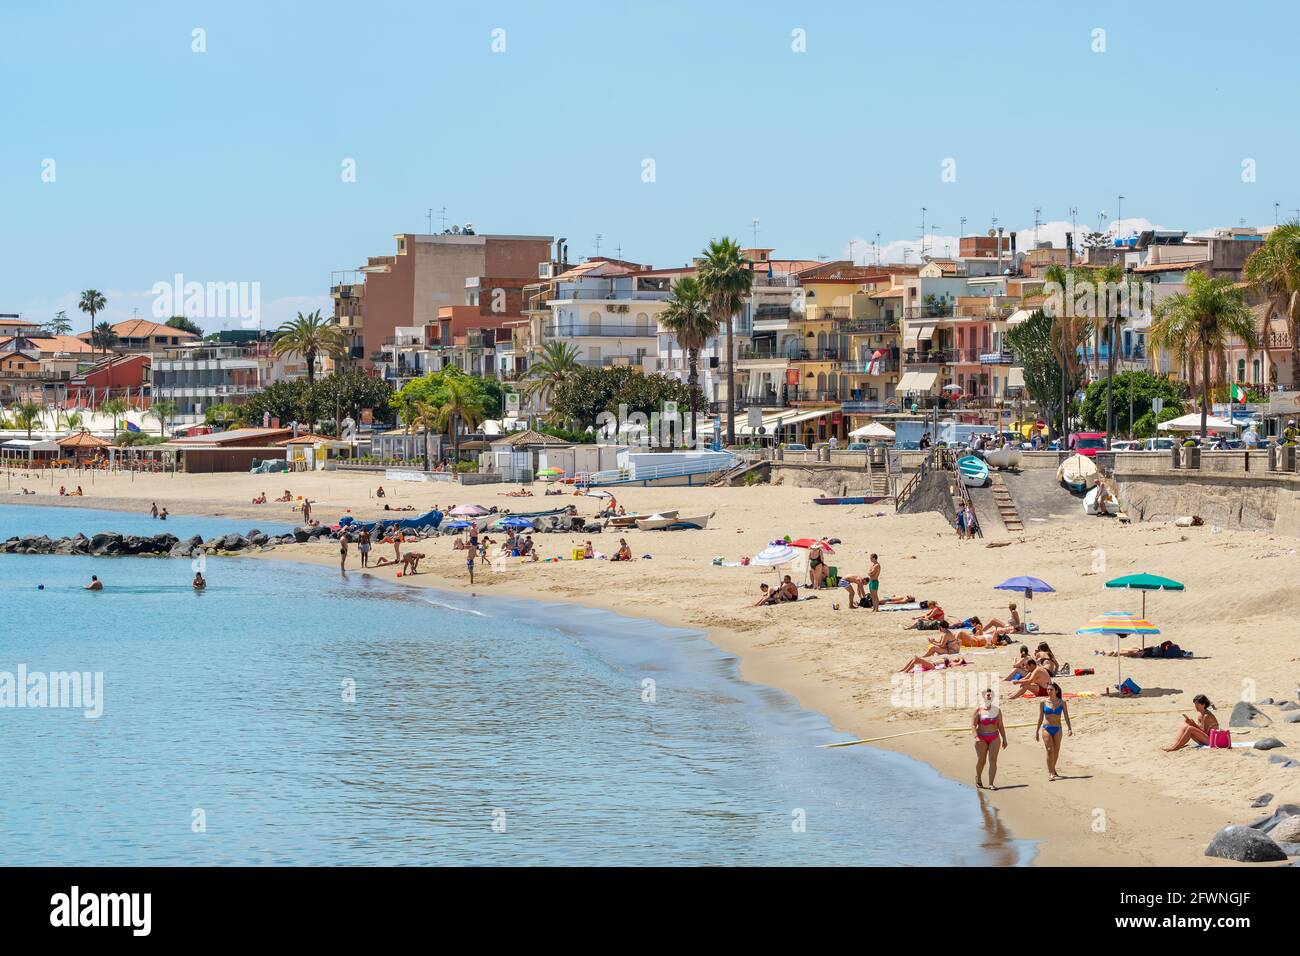 Beach in Giardini Naxos town, Sicily, Italy Stock Photo